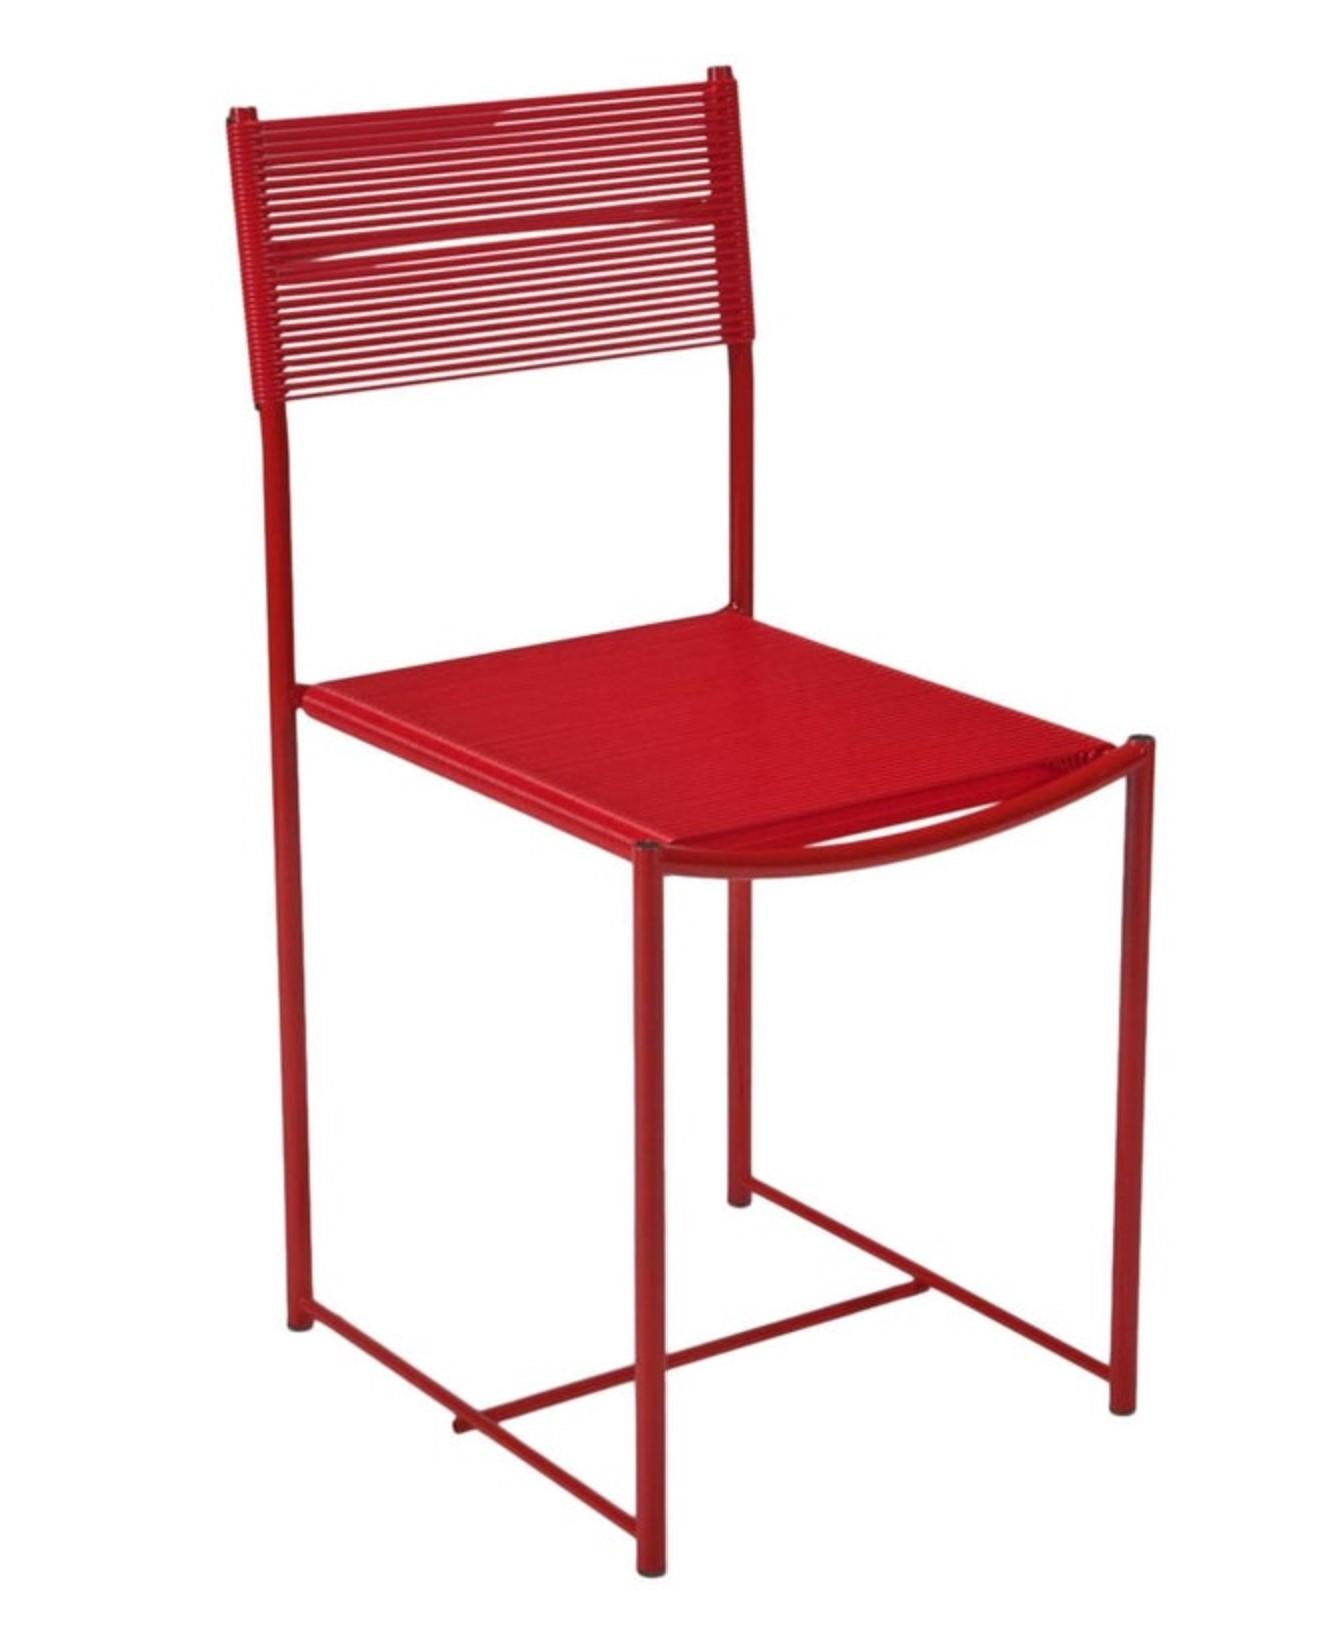 Die von Giandomenico Belotti (1922-2004) entworfenen Spaghetti-Stühle sind mit ihren PVC-Spaghetti-Riemen auf Stahlfüßen sehr bequem. Ein sehr erfolgreicher Entwurf von Belotti, der Teil der MoMA-Kollektion ist. Diese Ausgabe wurde in Italien von